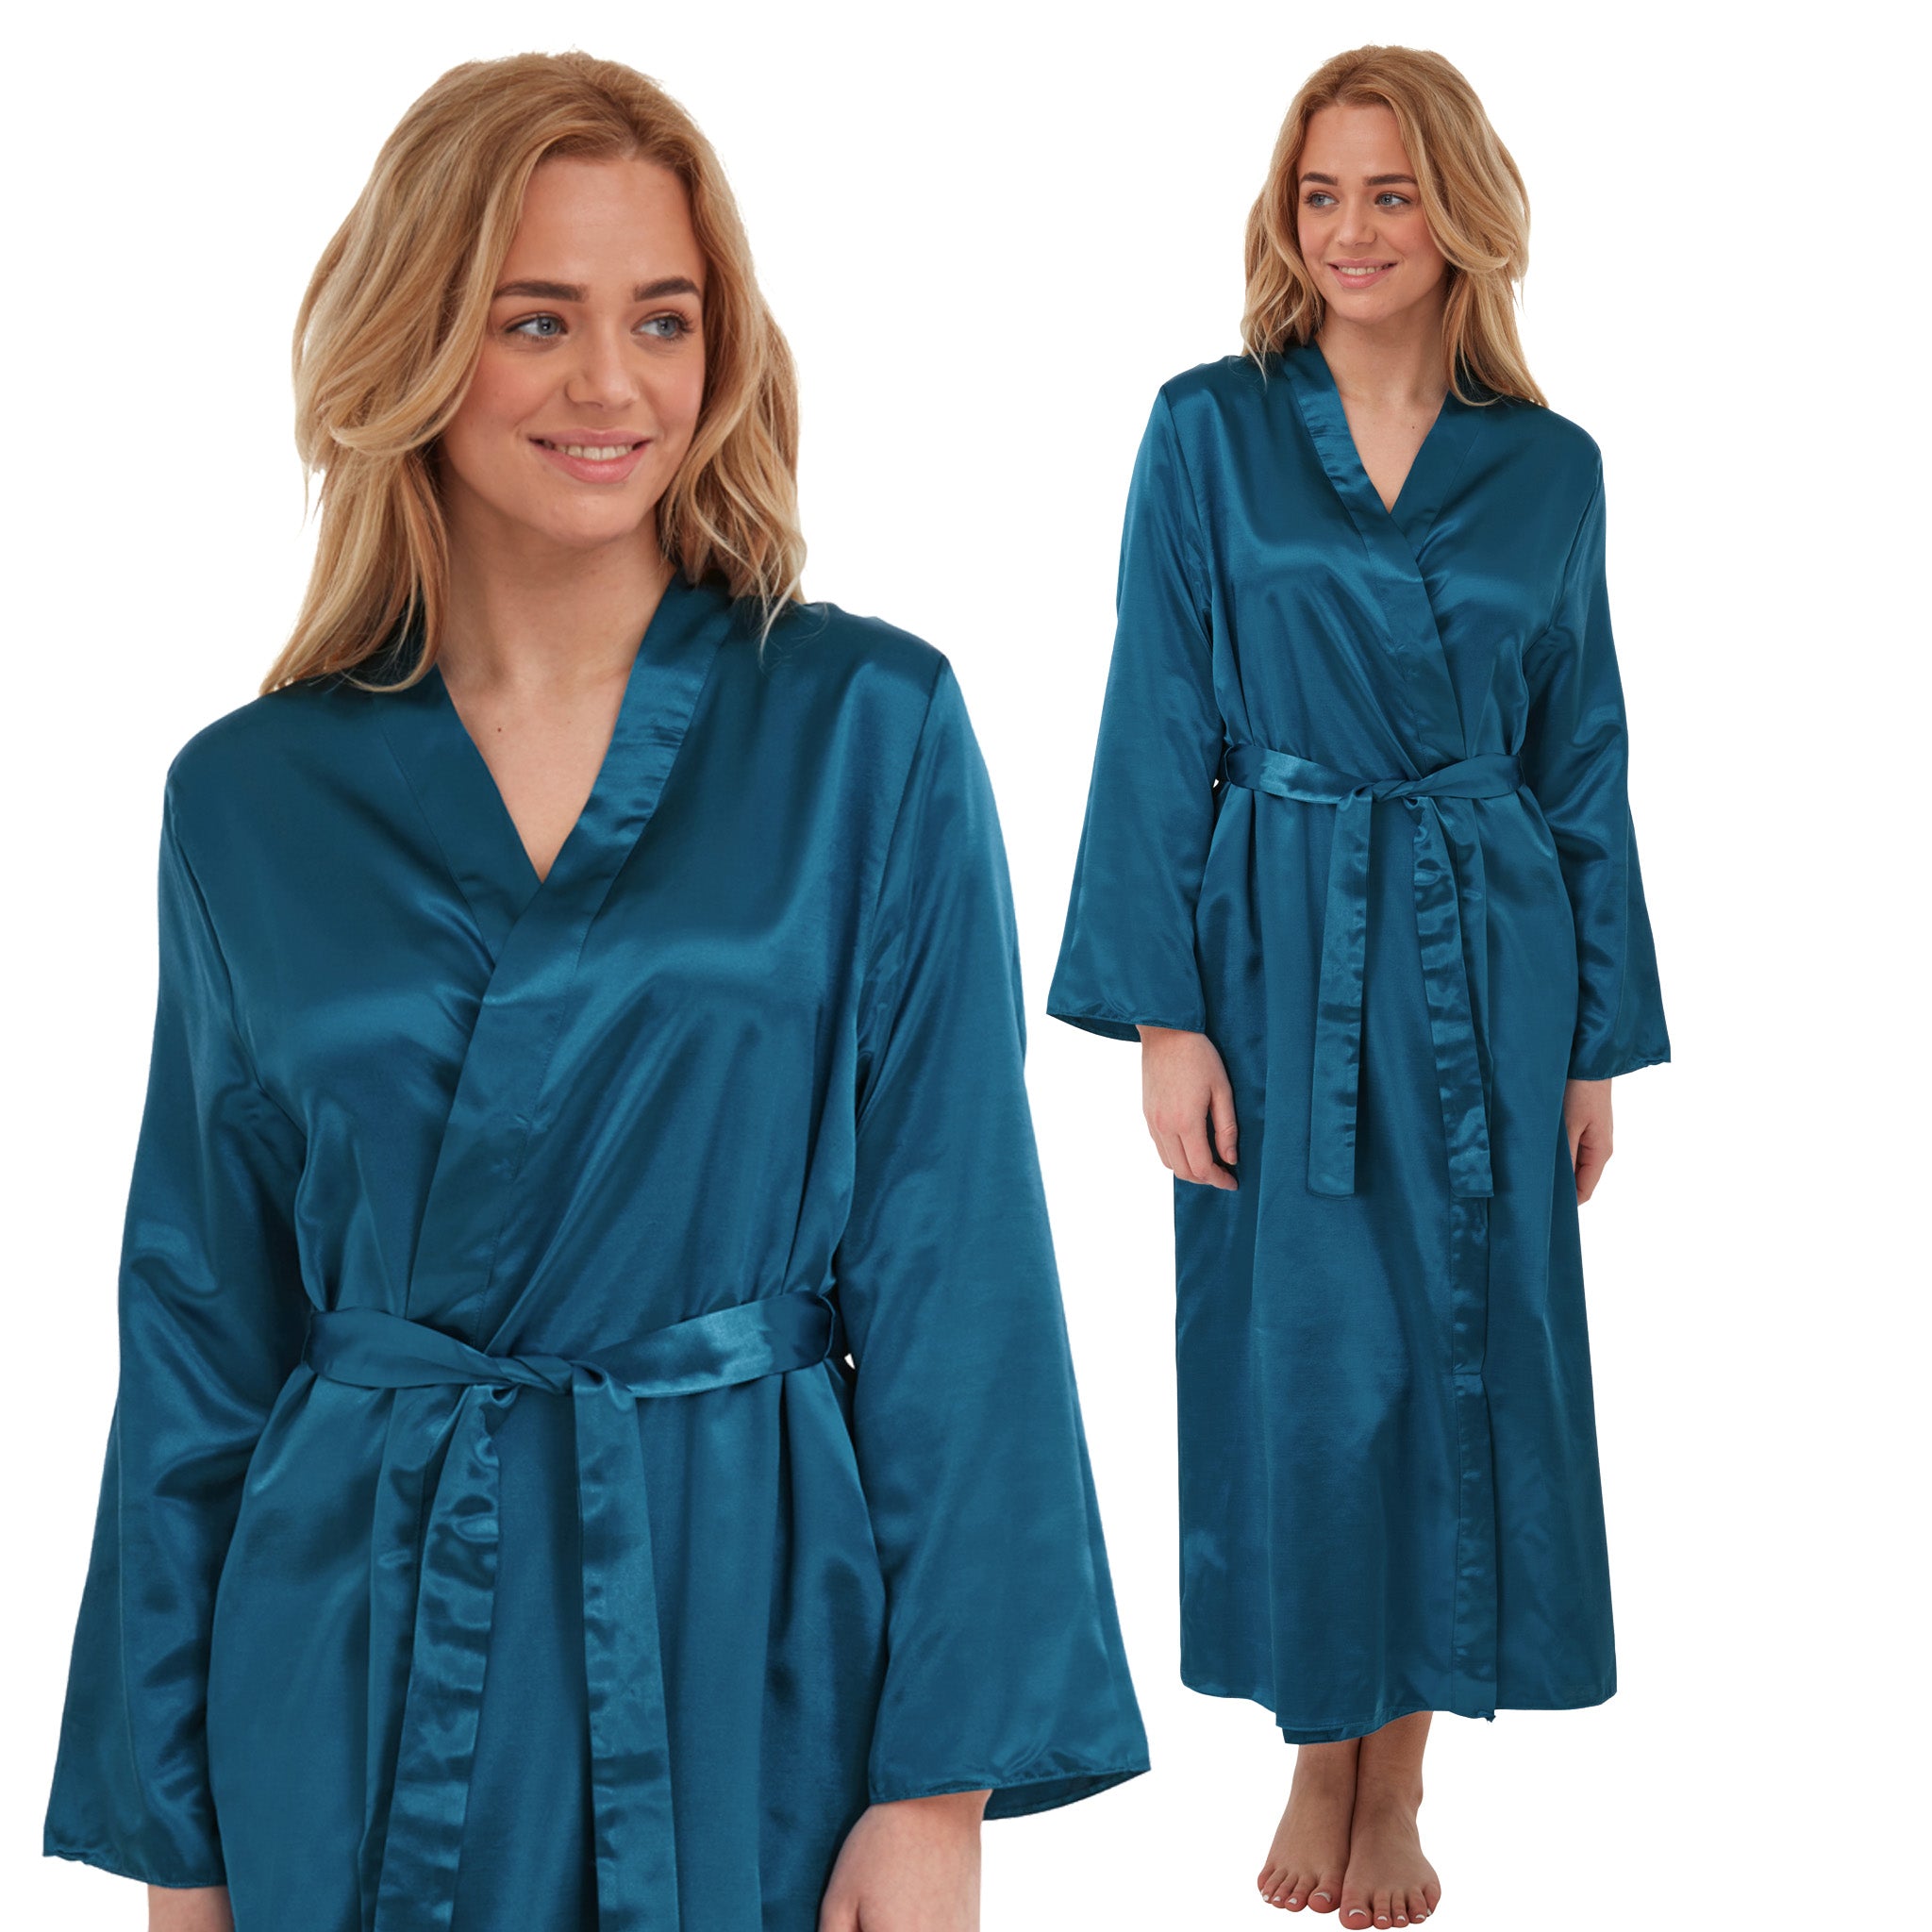 Satin Robe - Buy Trendy Satin Robe Online in India | Myntra